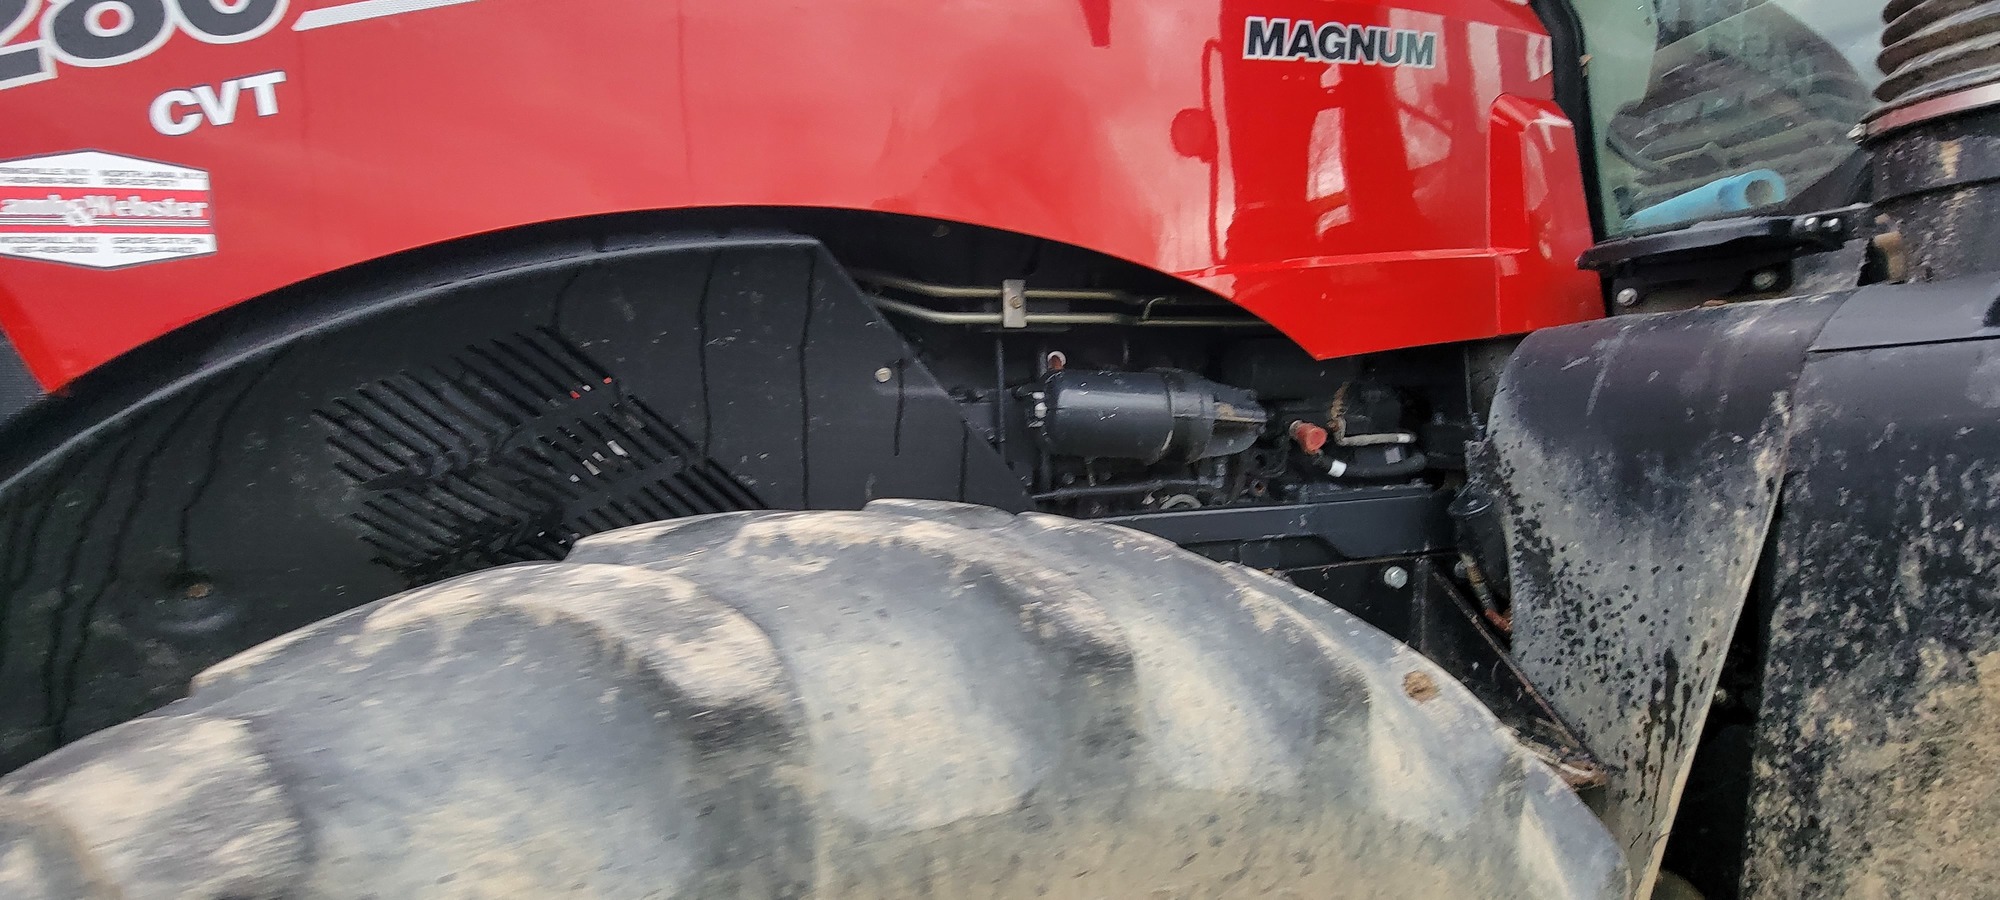 2018 CASE IH 280 CVT MAGNUM Agriculture Equipment | Iron Listing